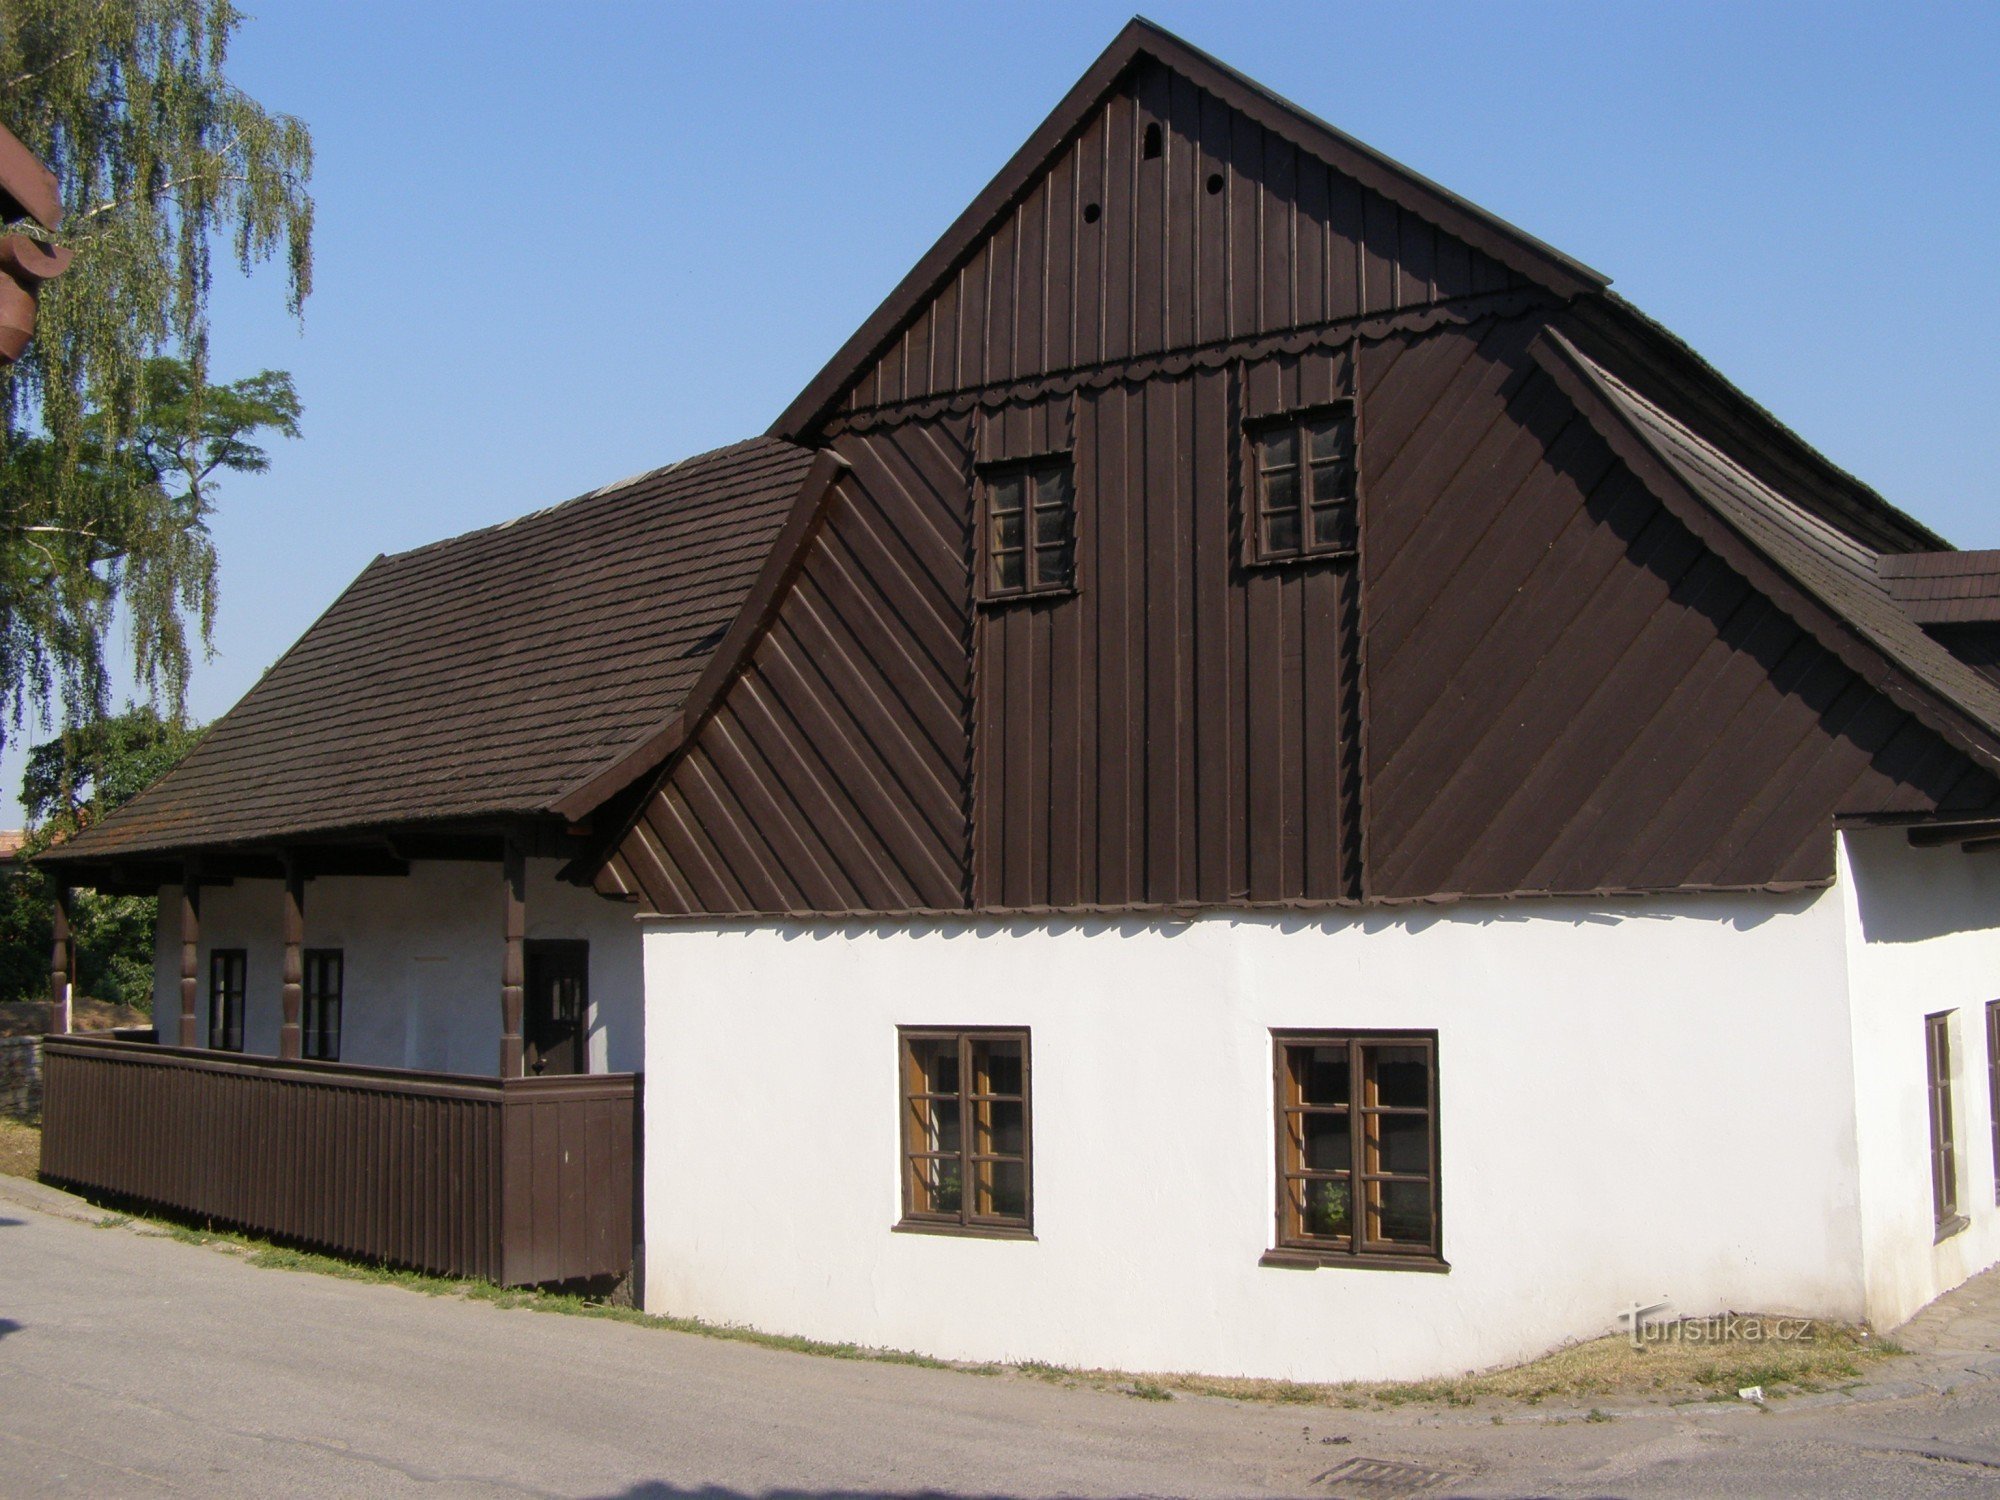 Dobruška - locul de naștere al lui FLVěk (Heka)